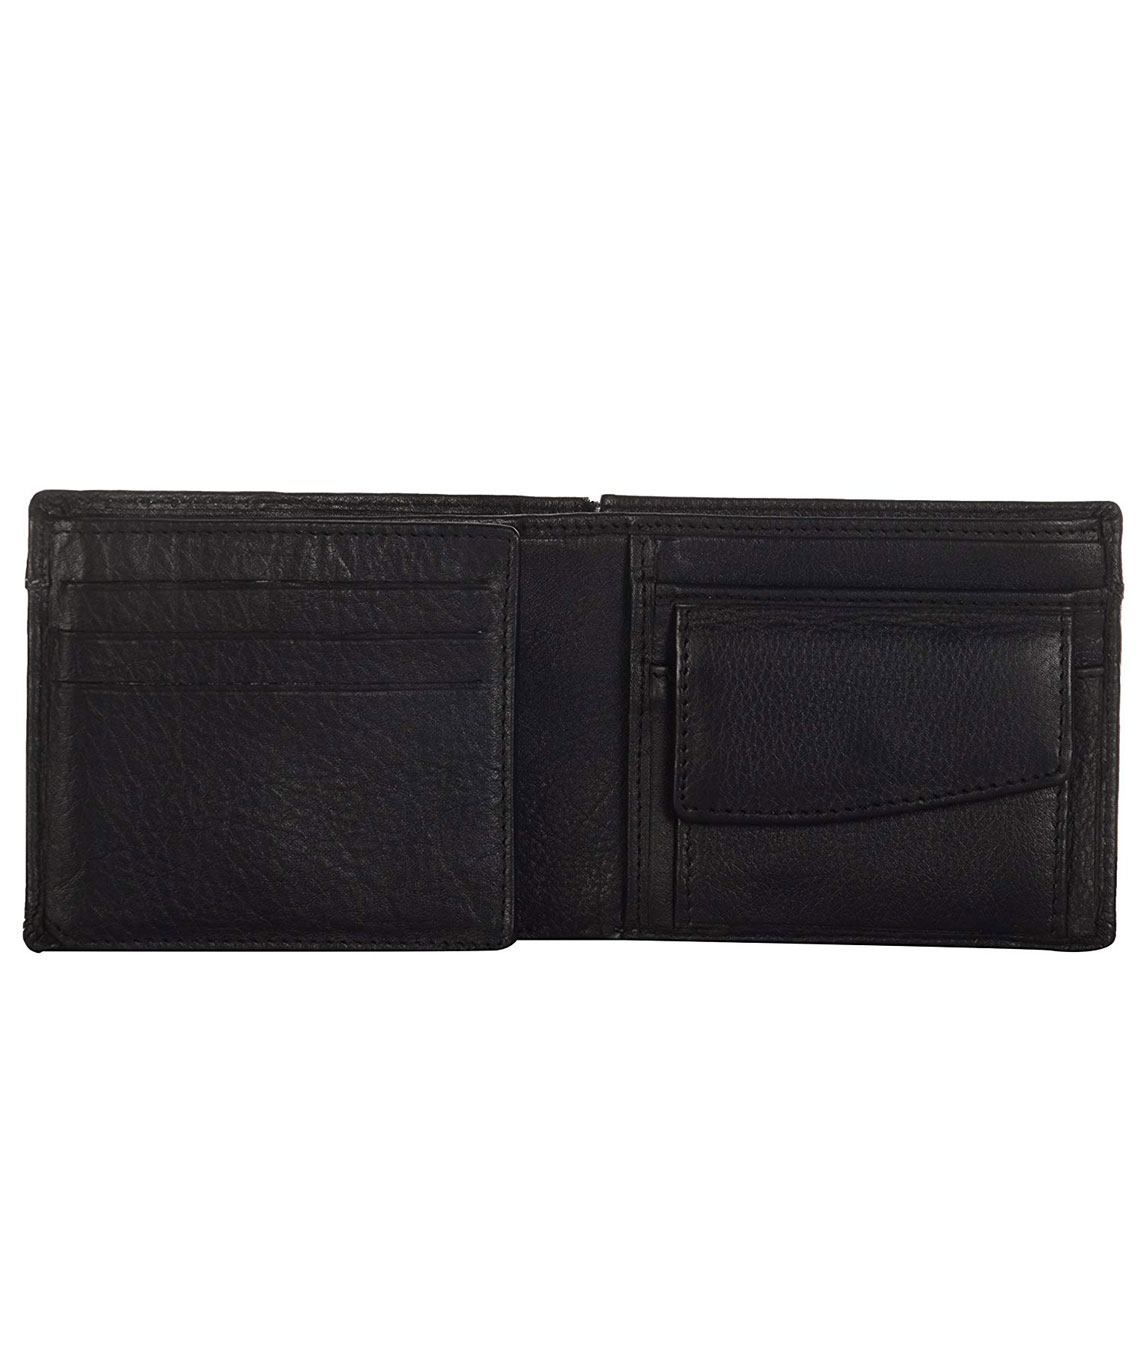 Bag lelaki bag casual purse bag wallet male handbag boys bag | Shopee  Malaysia